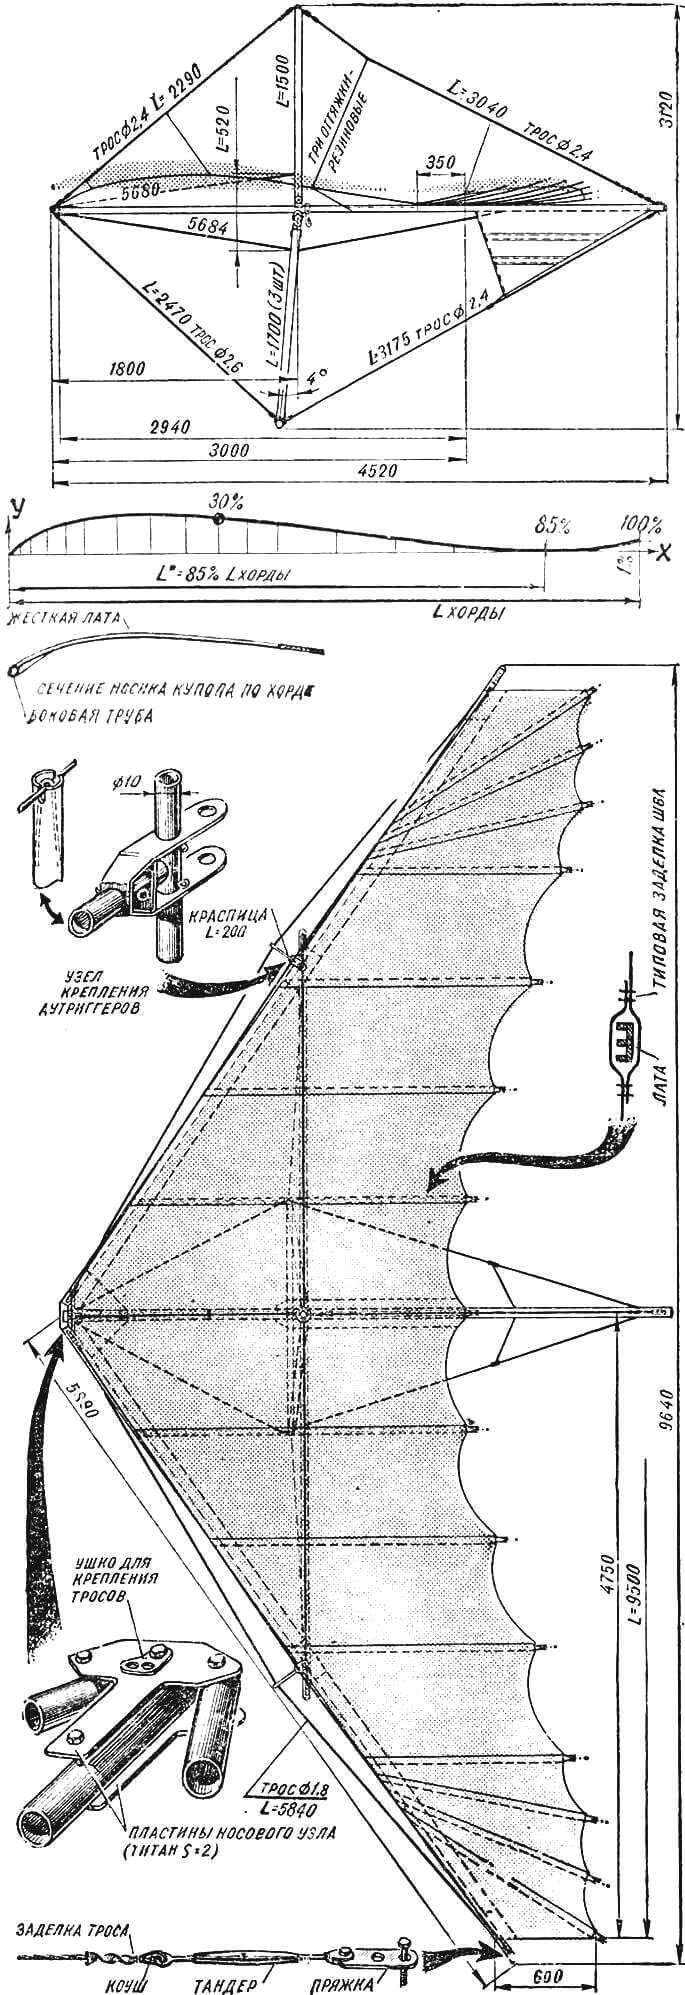 Рис. 1. Общий вид дельтаплана «Альбатрос» сбоку и сверху.